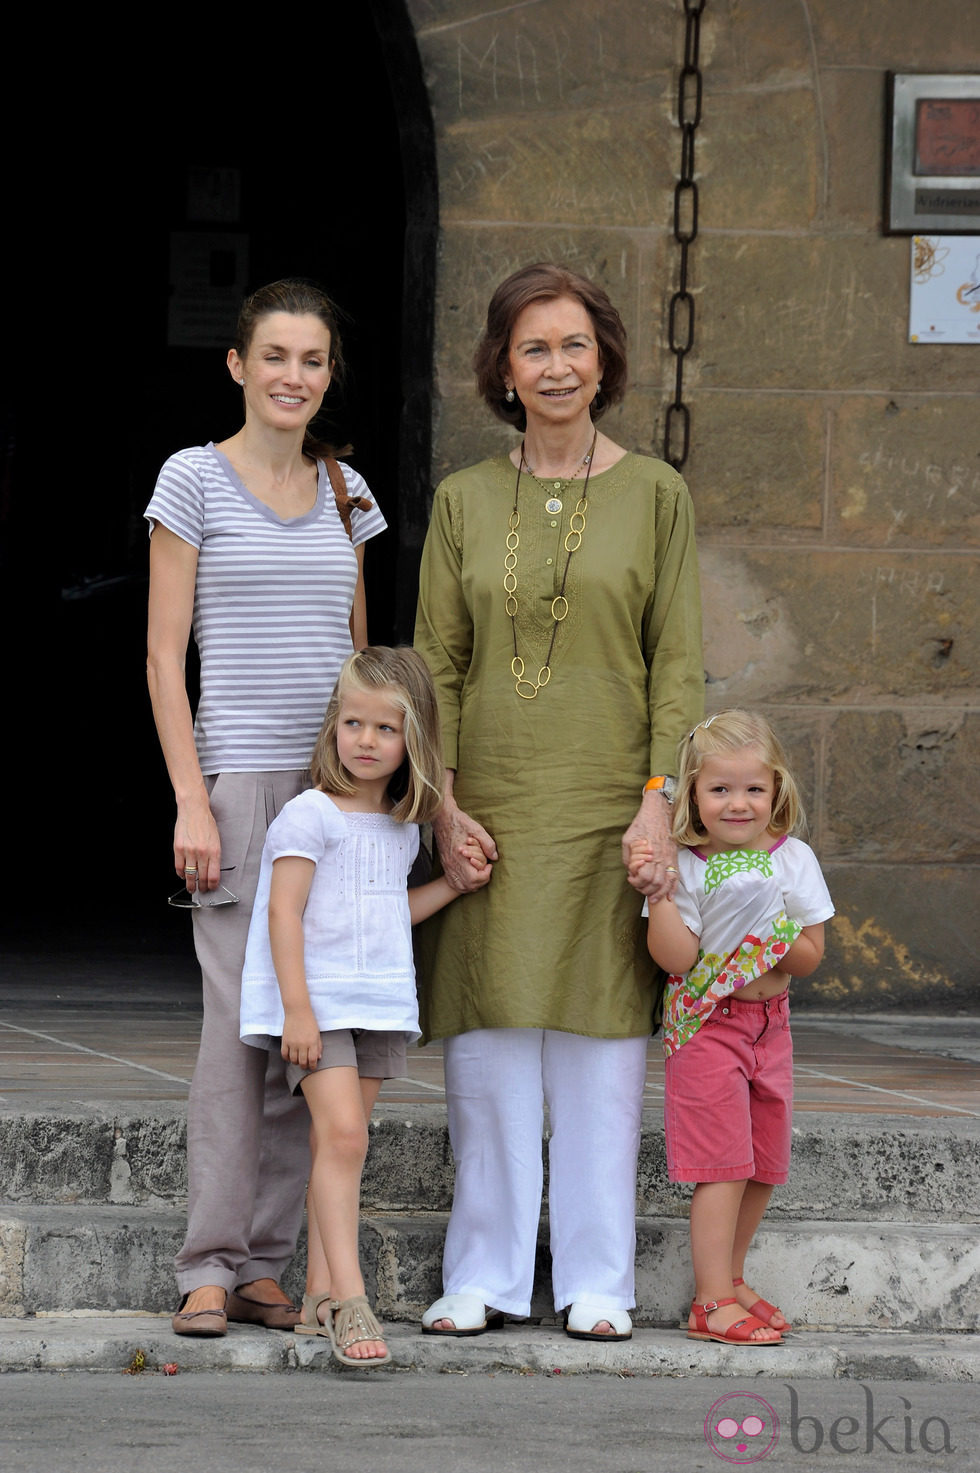 Look de la reina Sofía con kaftan verde oliva y pantalón blanco en verano de 2010